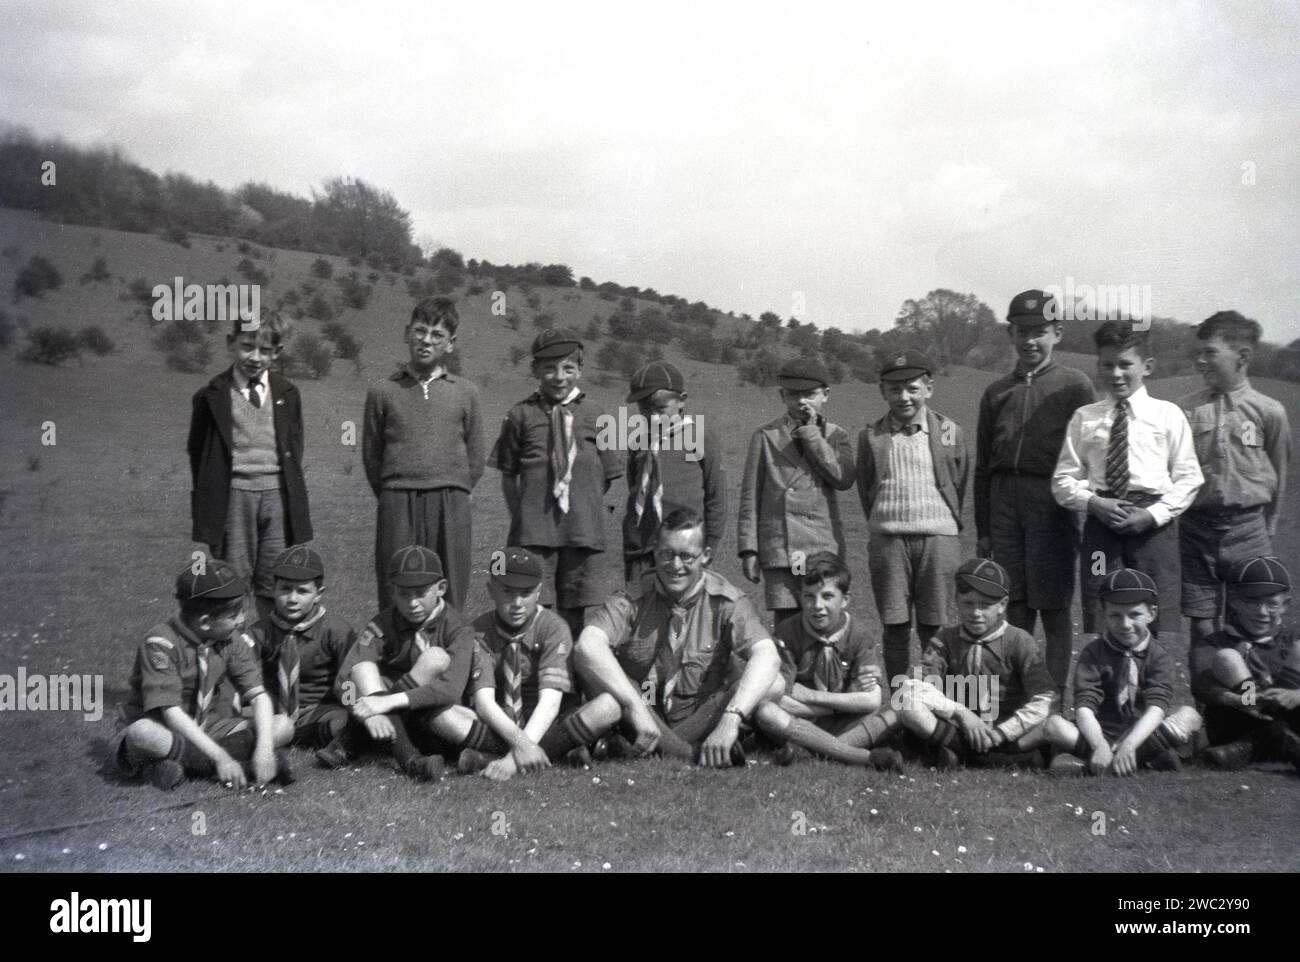 1941, historisch, sommerlich und ein Bild der Scouts der 17. Coulsdon Pack Gruppe mit ihrem Scouter Führer in Devil's den, Dorking, Surrey, England, Großbritannien. 1907 gründete der Gründer der Pfadfinderbewegung, der britische Army Officier, Robert Baden-Powell, auf Brownsea Island in der Nähe von Poole sein Straflager für Jungen und veröffentlichte im folgenden Jahr sein berühmtes Buch „Scouting for Boys“. Zwei Jahre später gründete Baden-Powell mit seiner Schwester Agnes die Girl Guides. Stockfoto